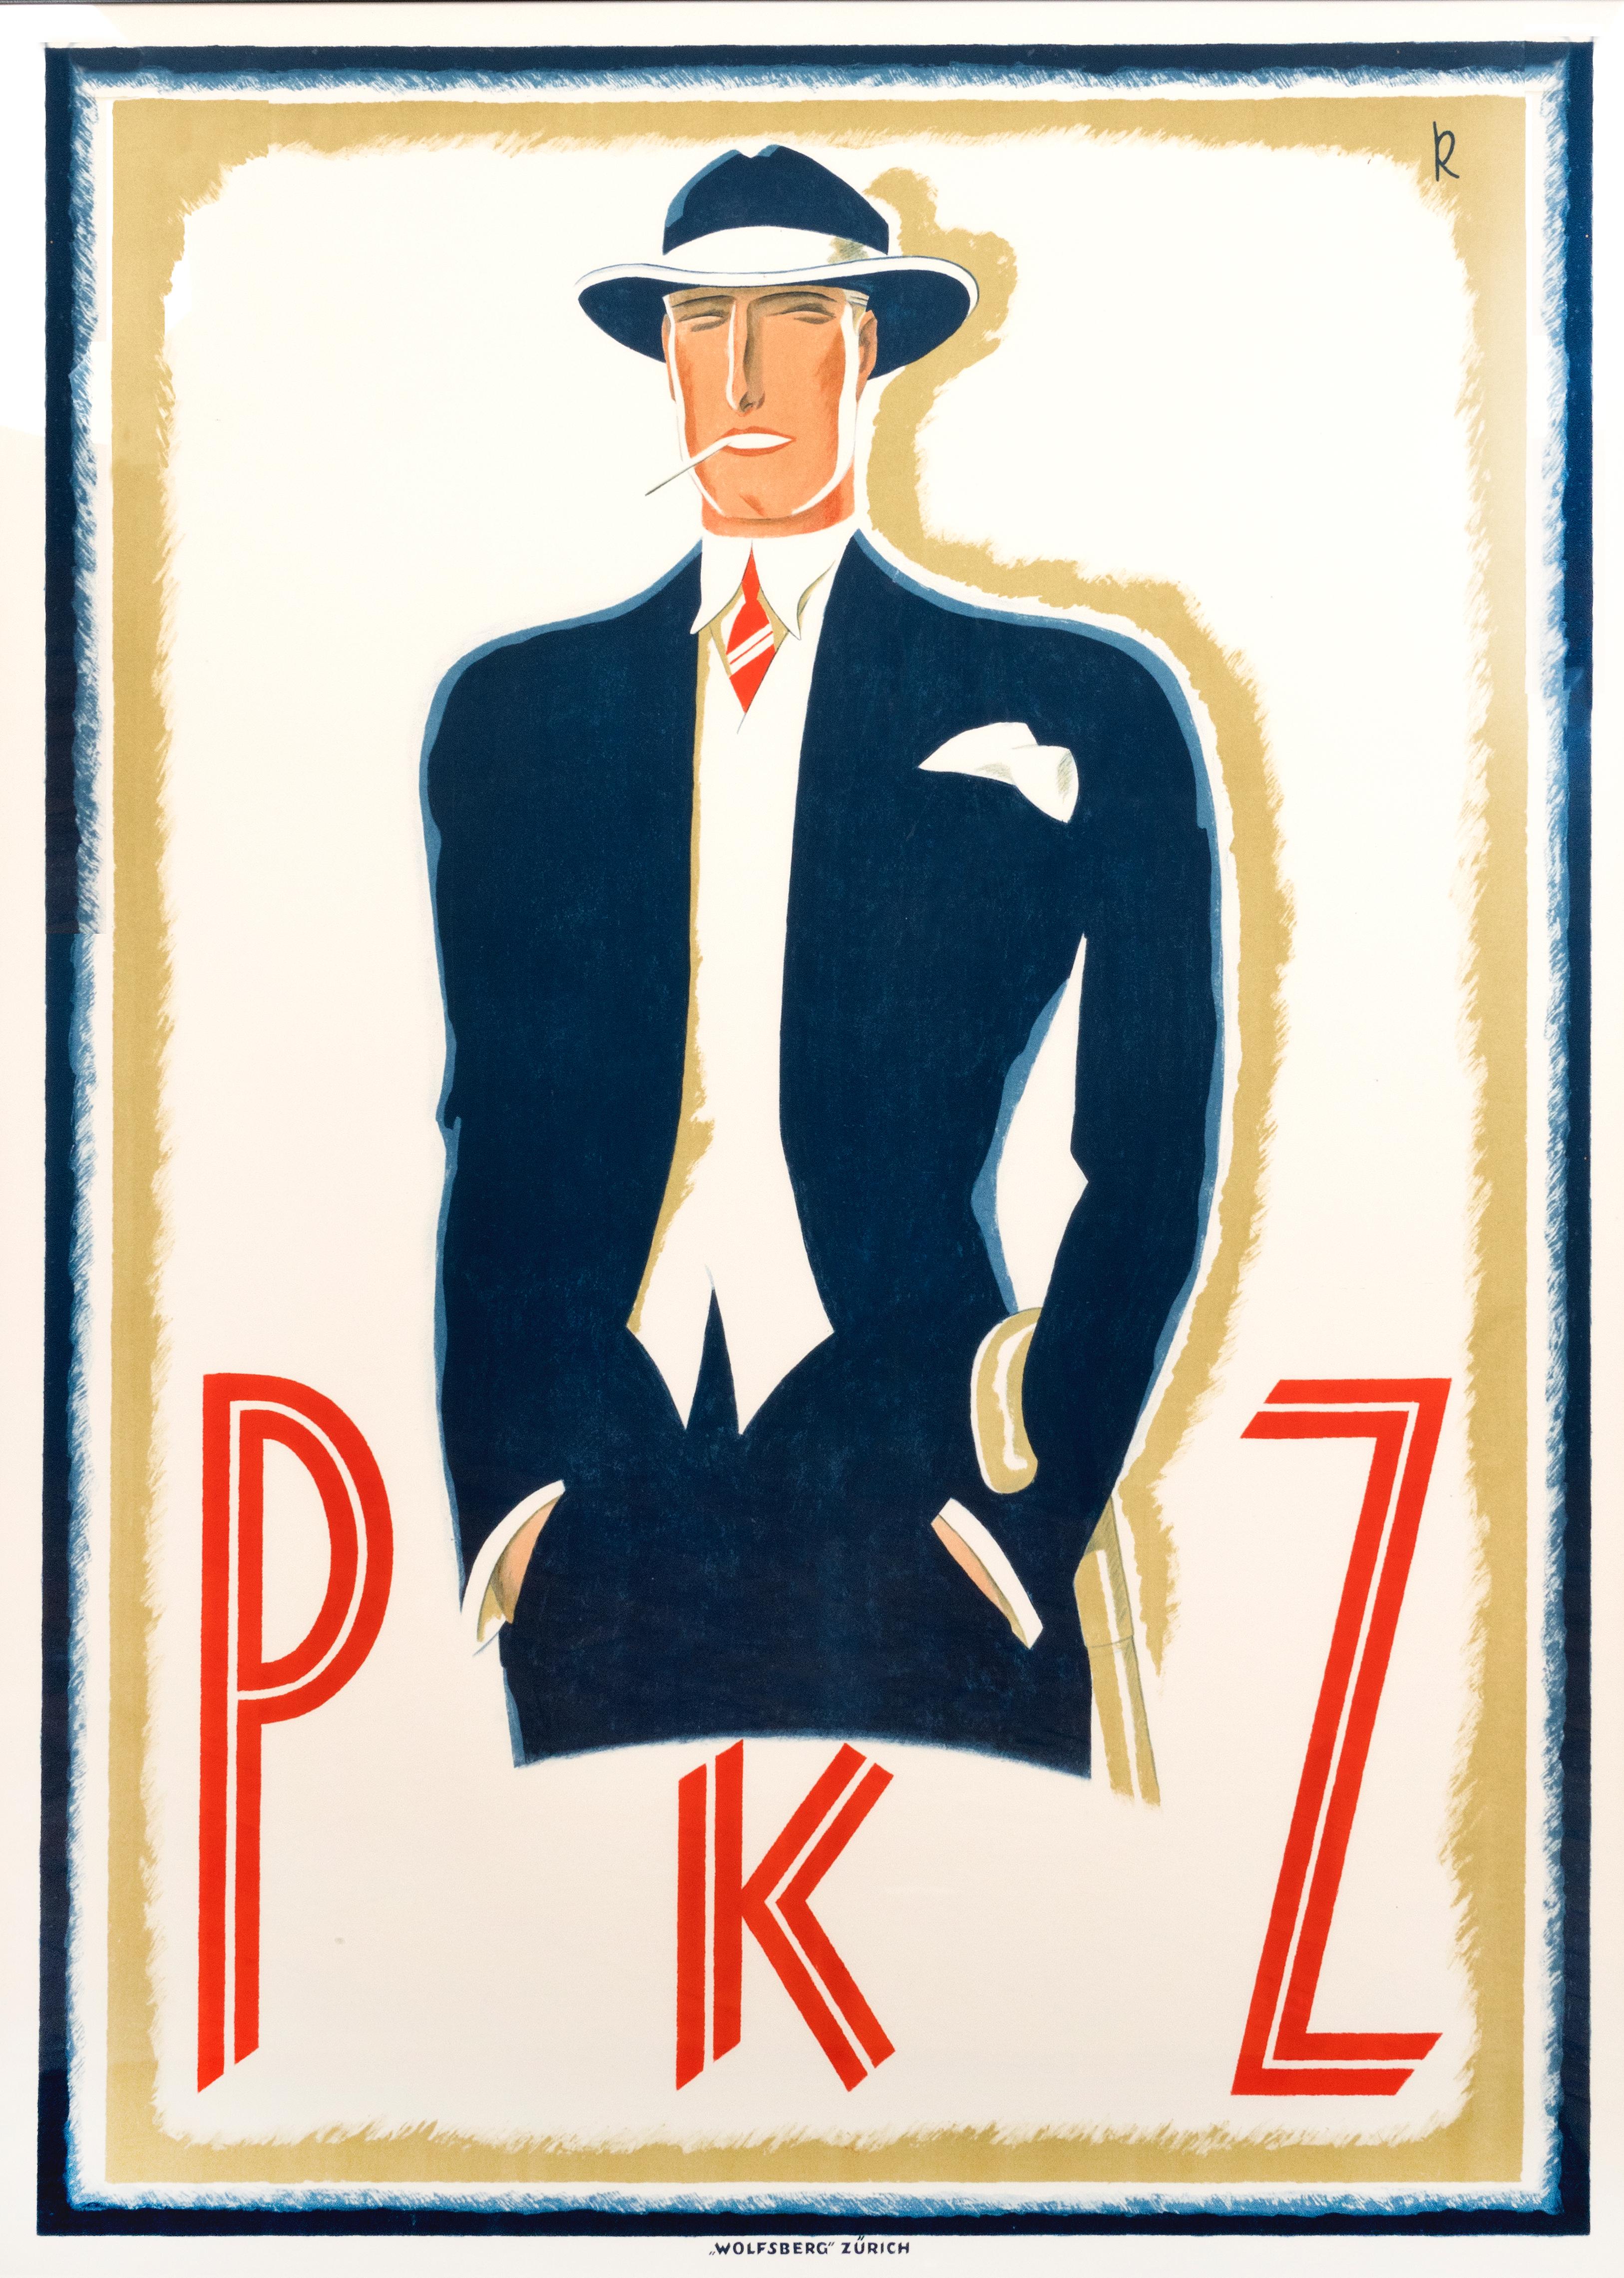 "PKZ" Original Vintage Men's Fashion Poster - Print by A. Kretschmann